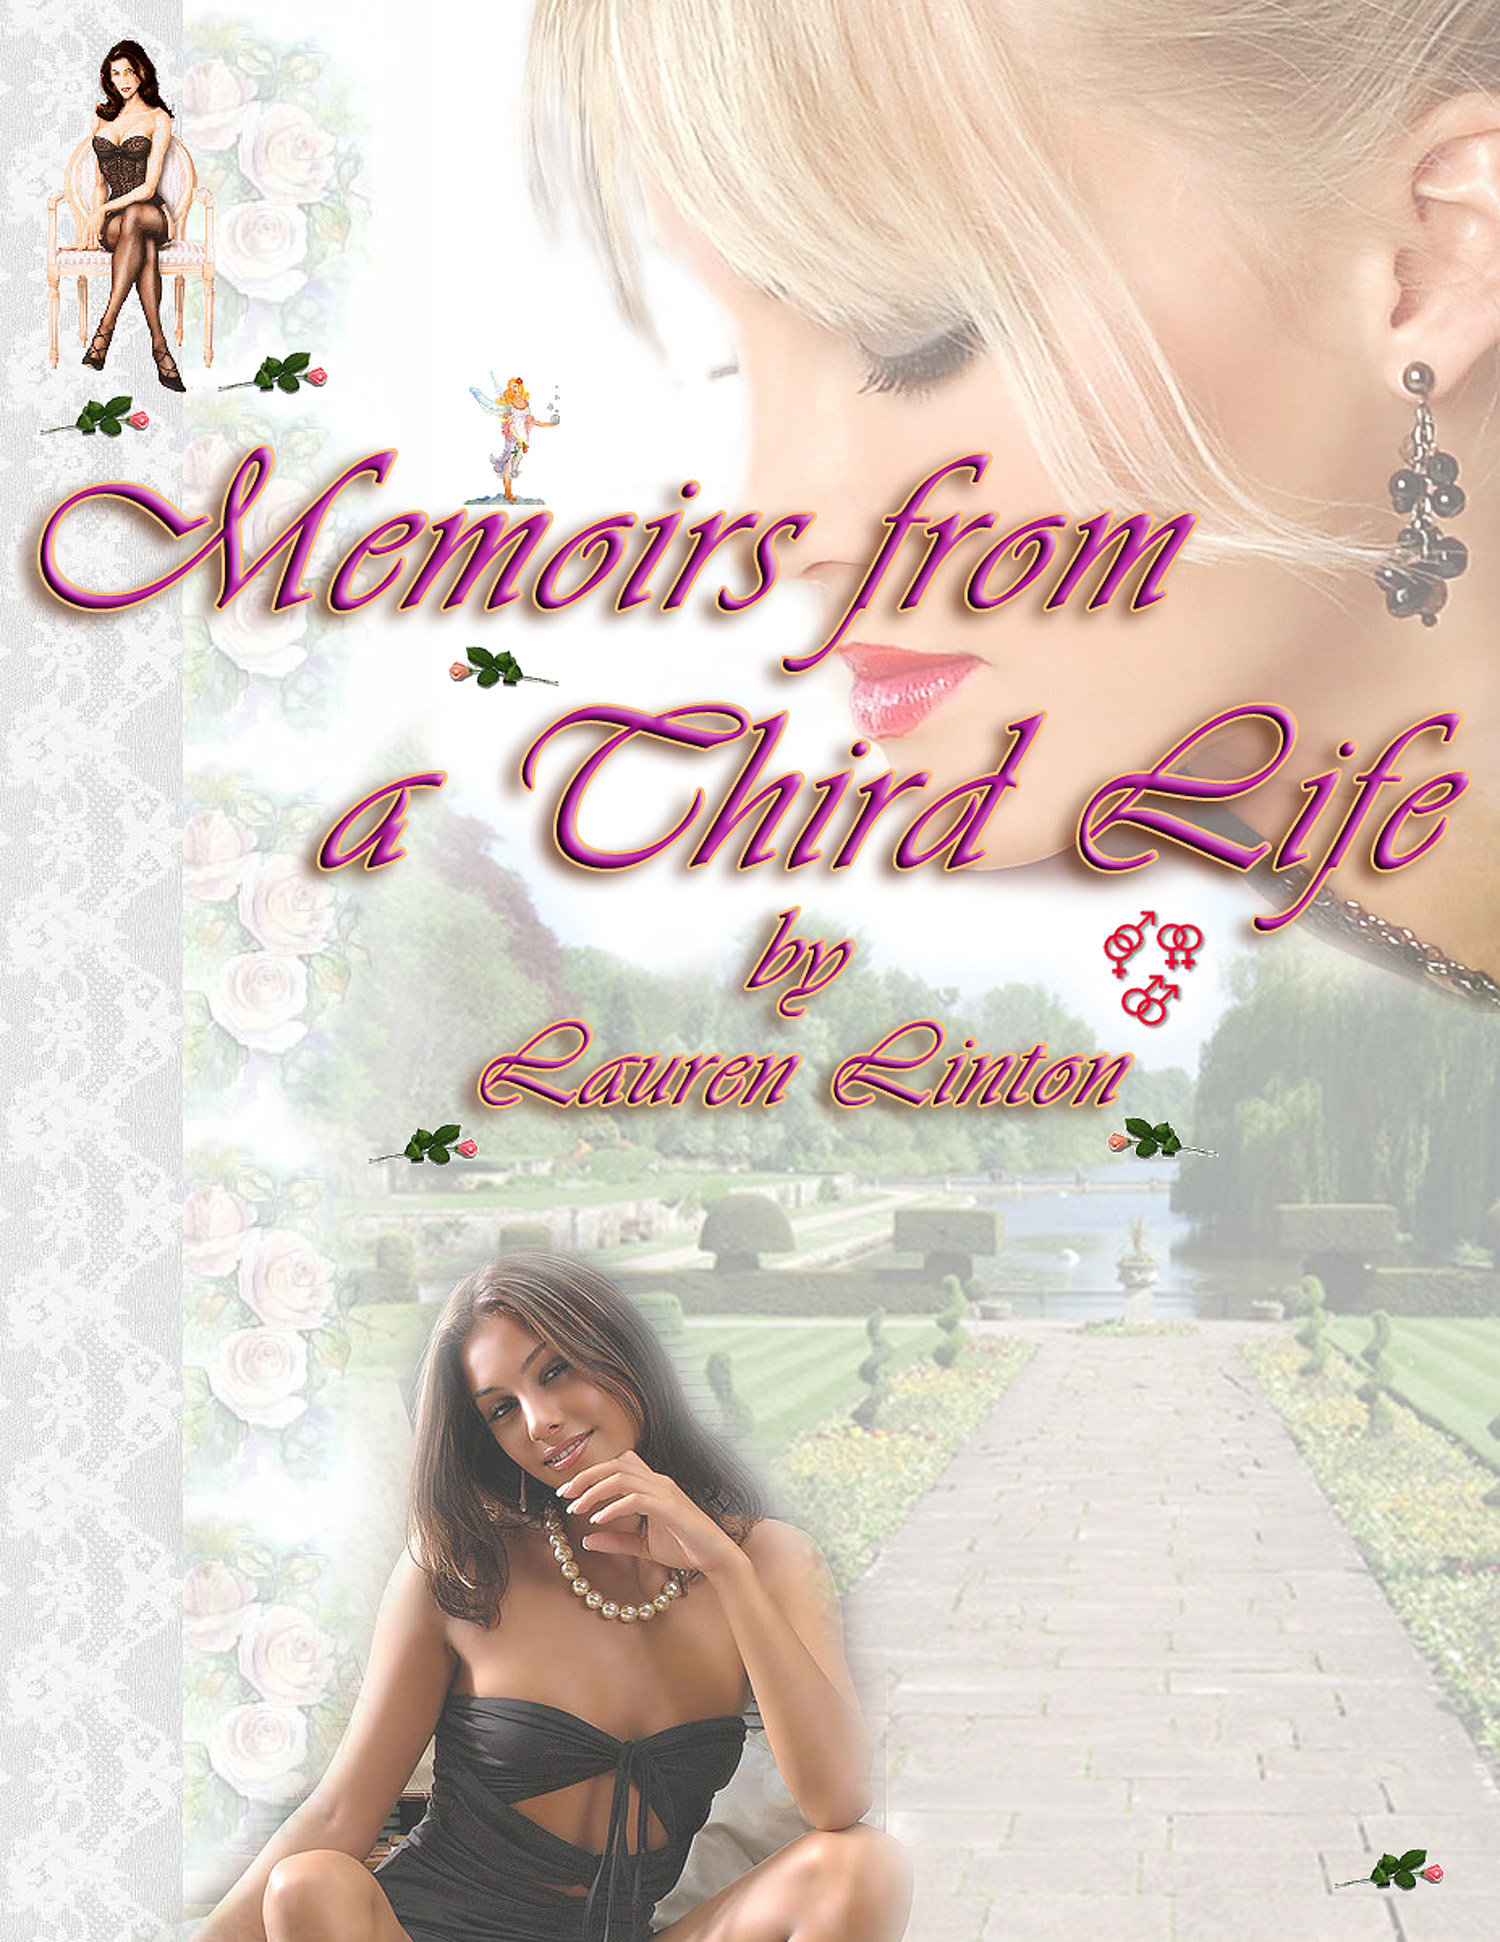 Memoirs From A Third Life An Ebook By Lauren Linton - 